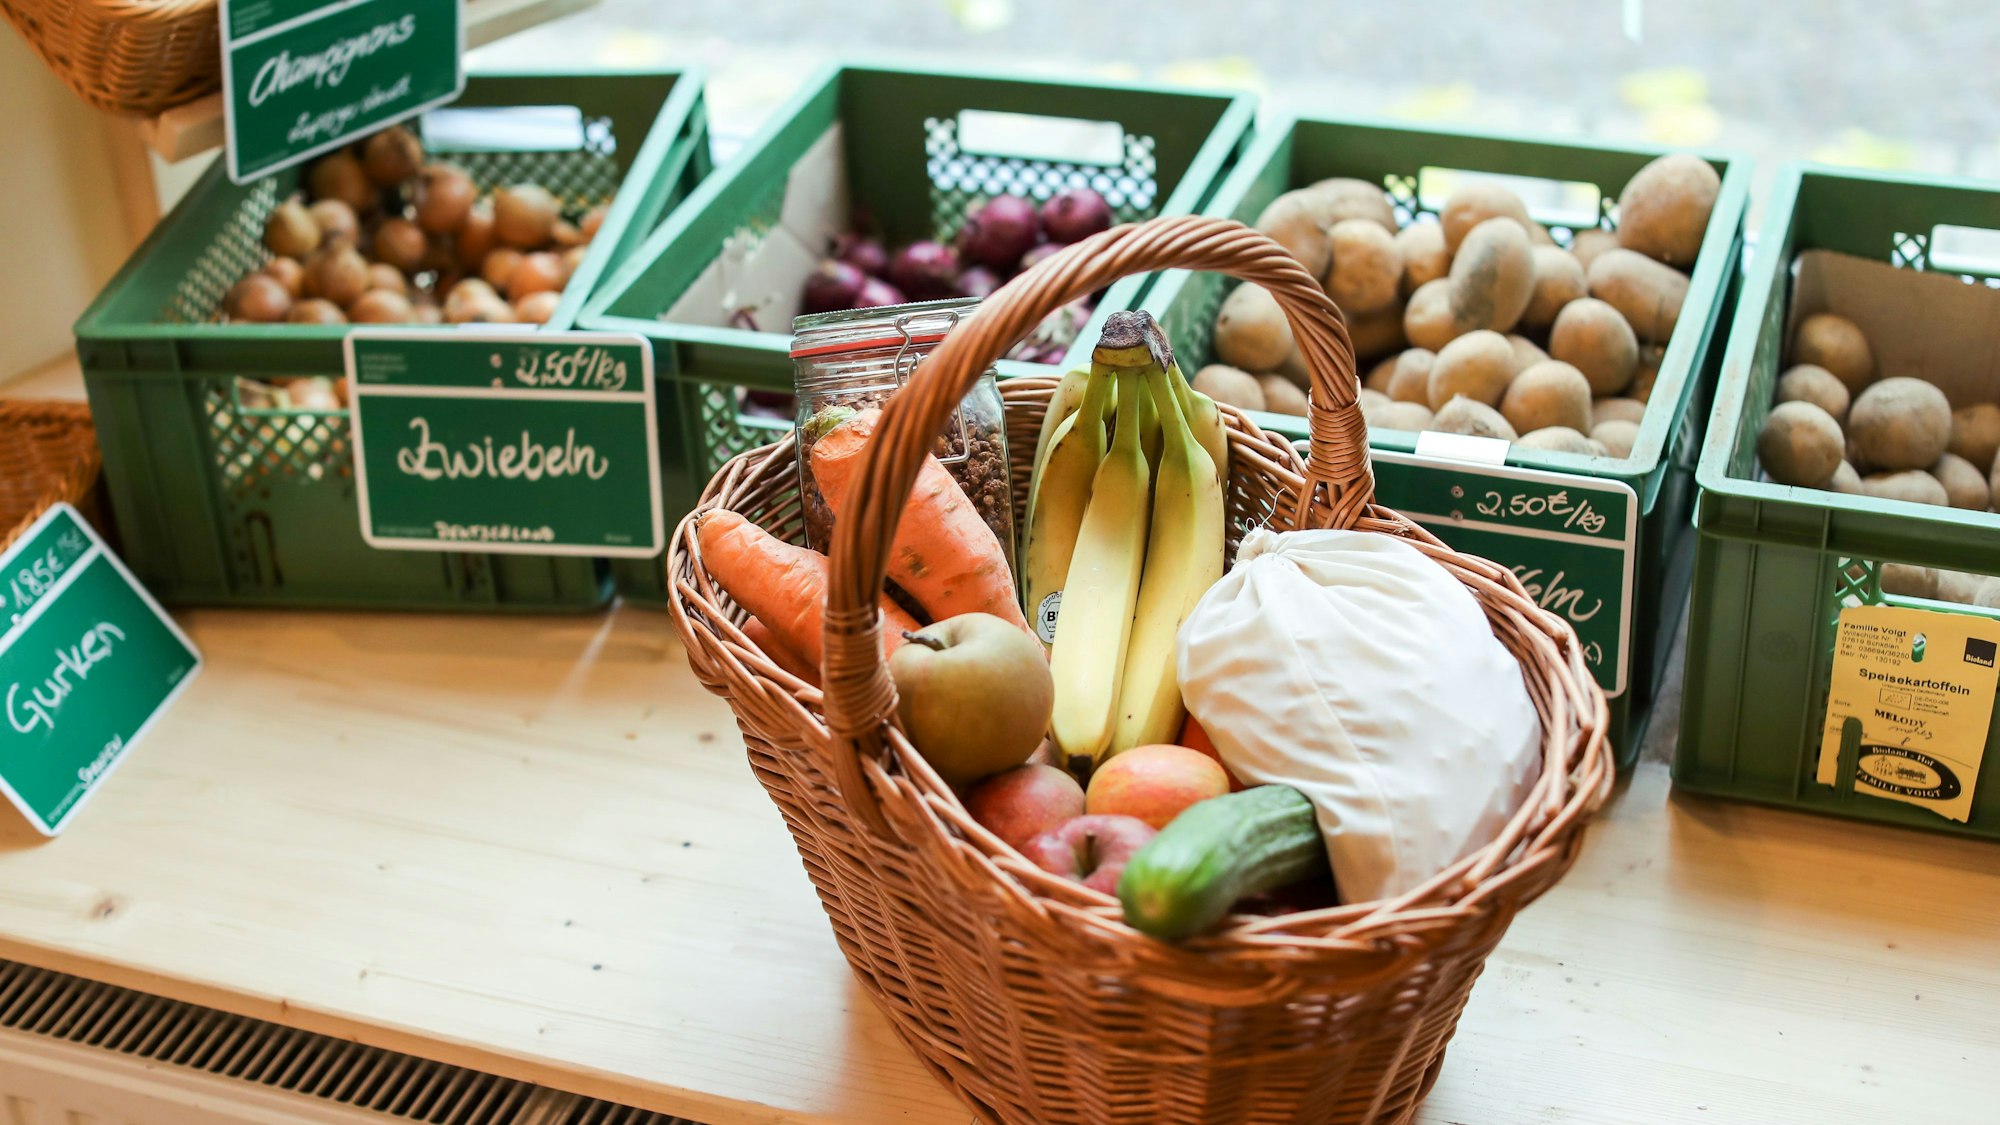 Ein zugeschnürtes Stoffsäckchen mit Nudeln liegt neben Obst und Gemüse in einem Korb in einem "Unverpackt"-Laden.